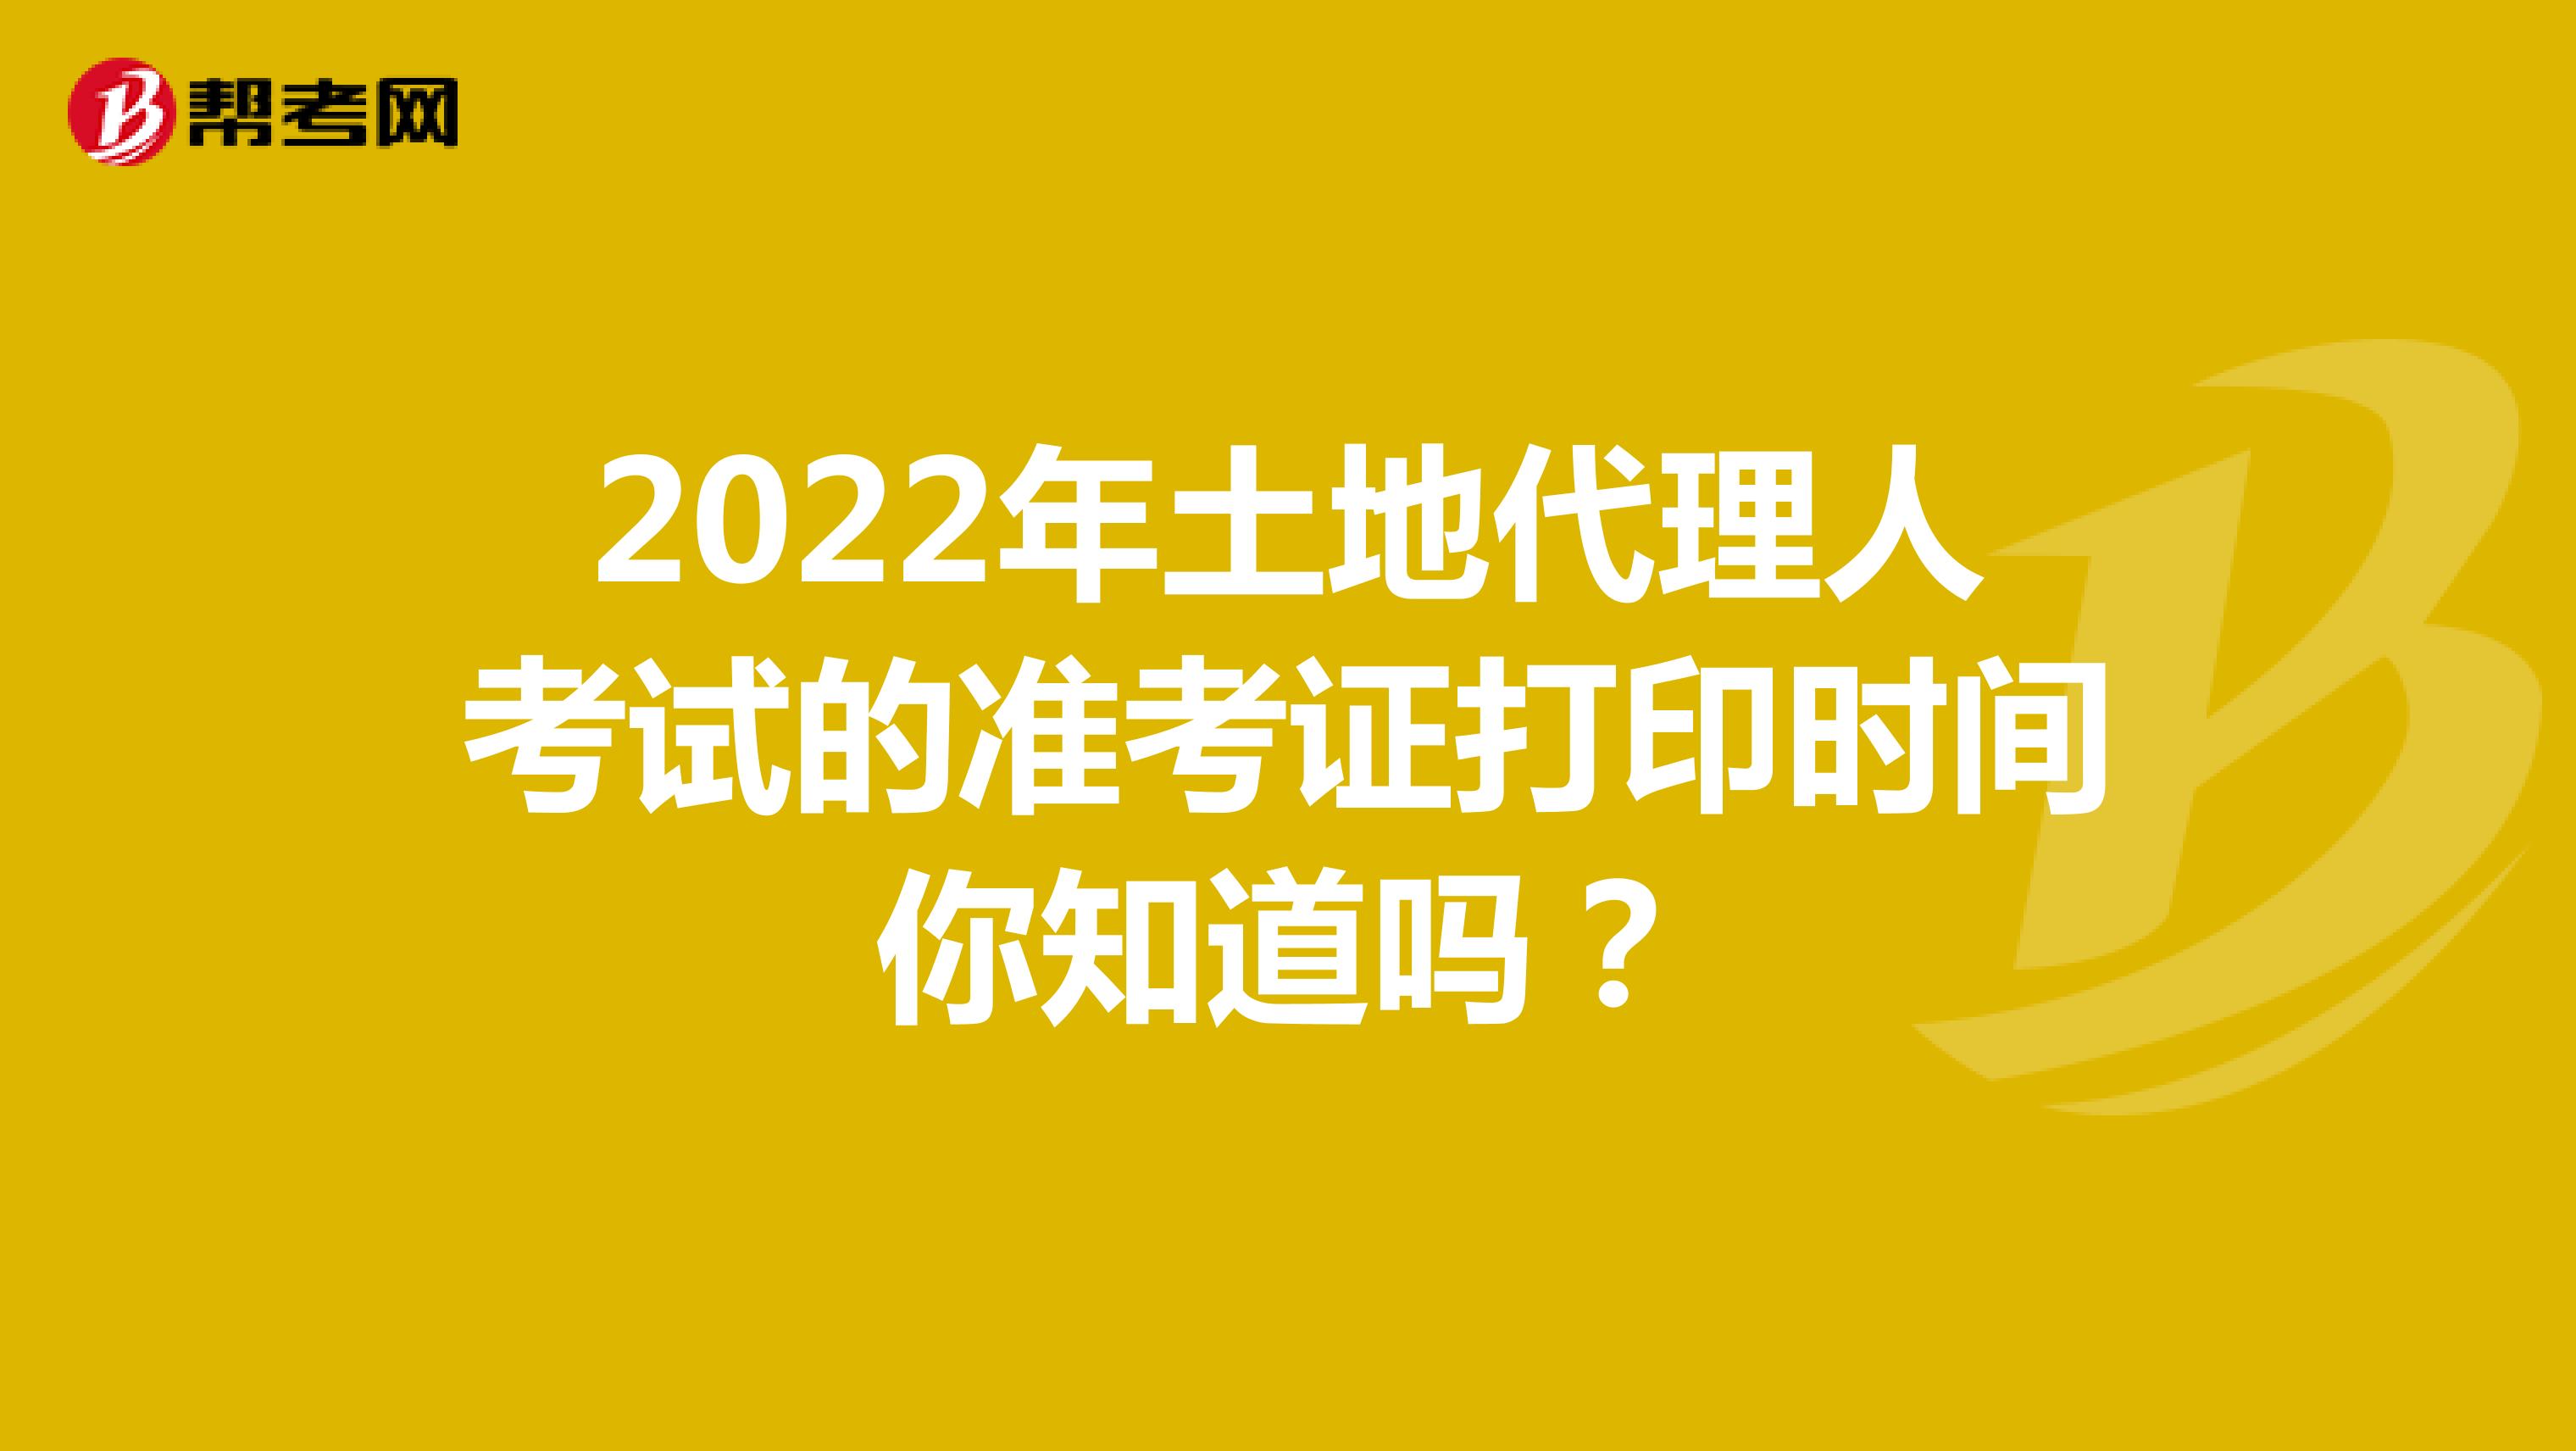 2022年土地代理人考试的准考证打印时间你知道吗？